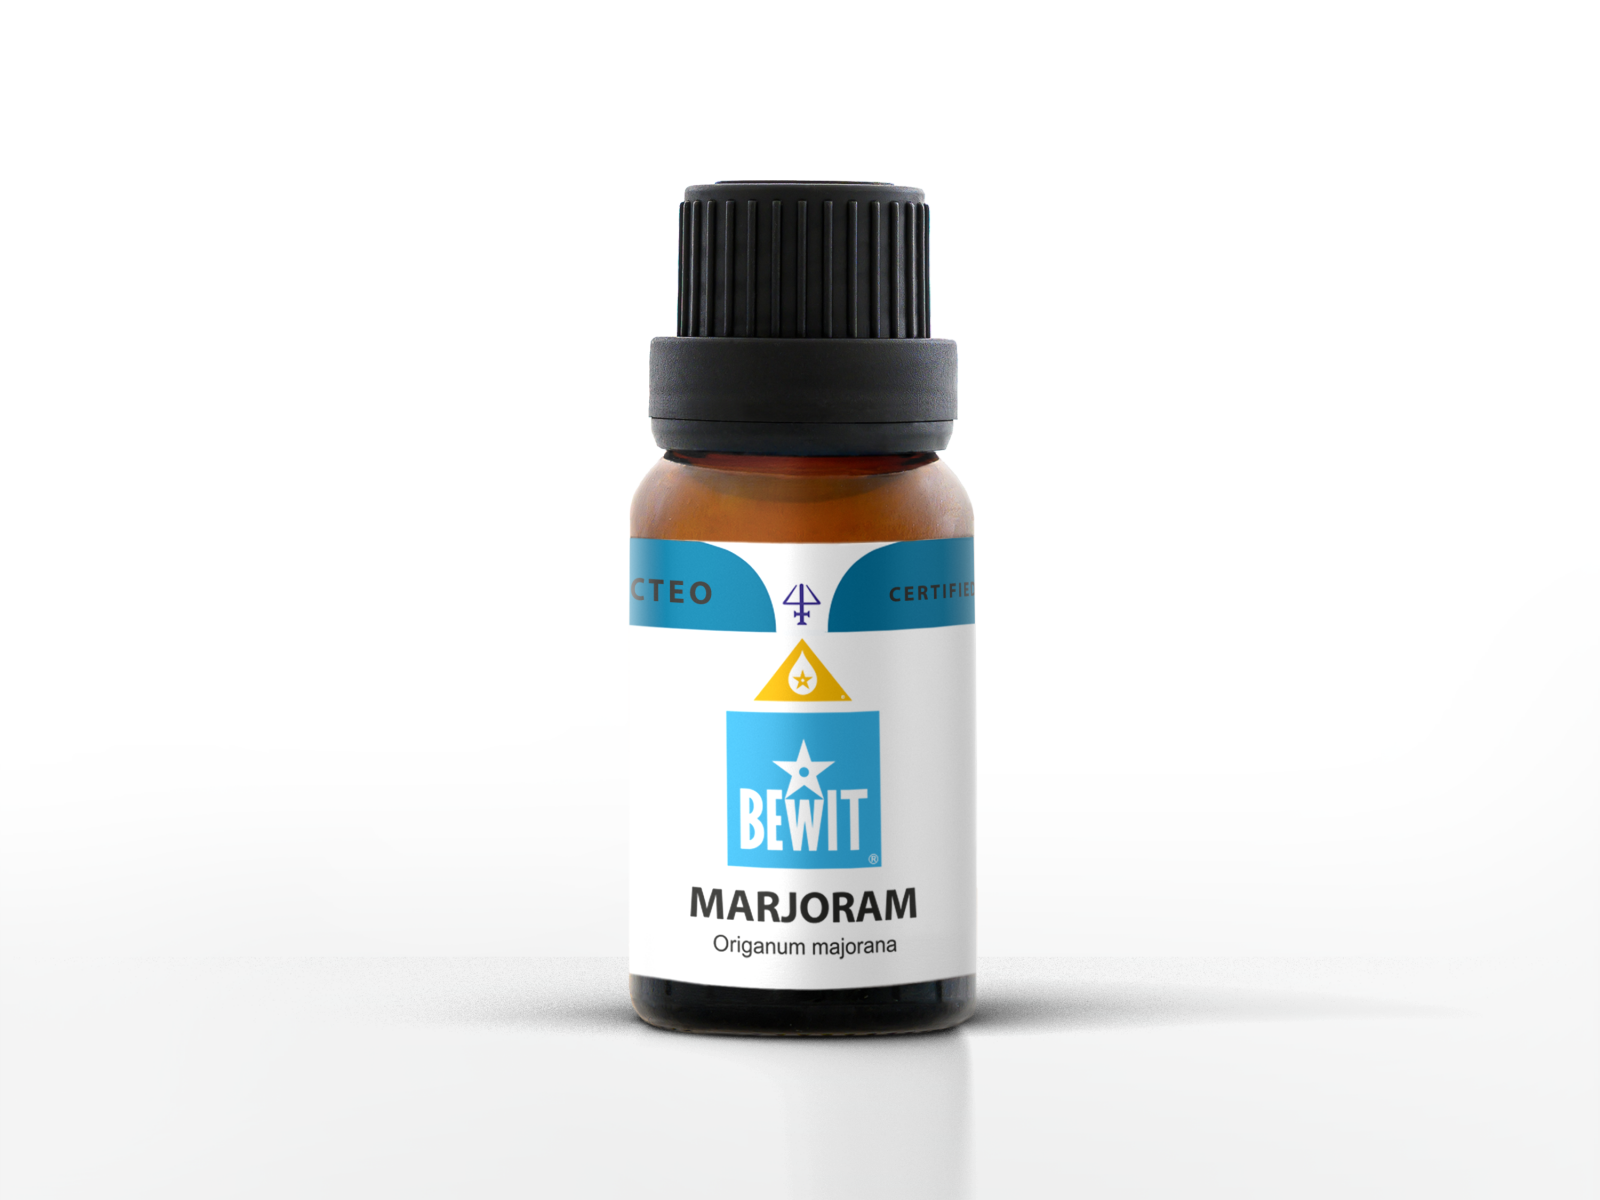 BEWIT Majoránka - 100% čistý a přírodní CTEO® esenciální olej - 3